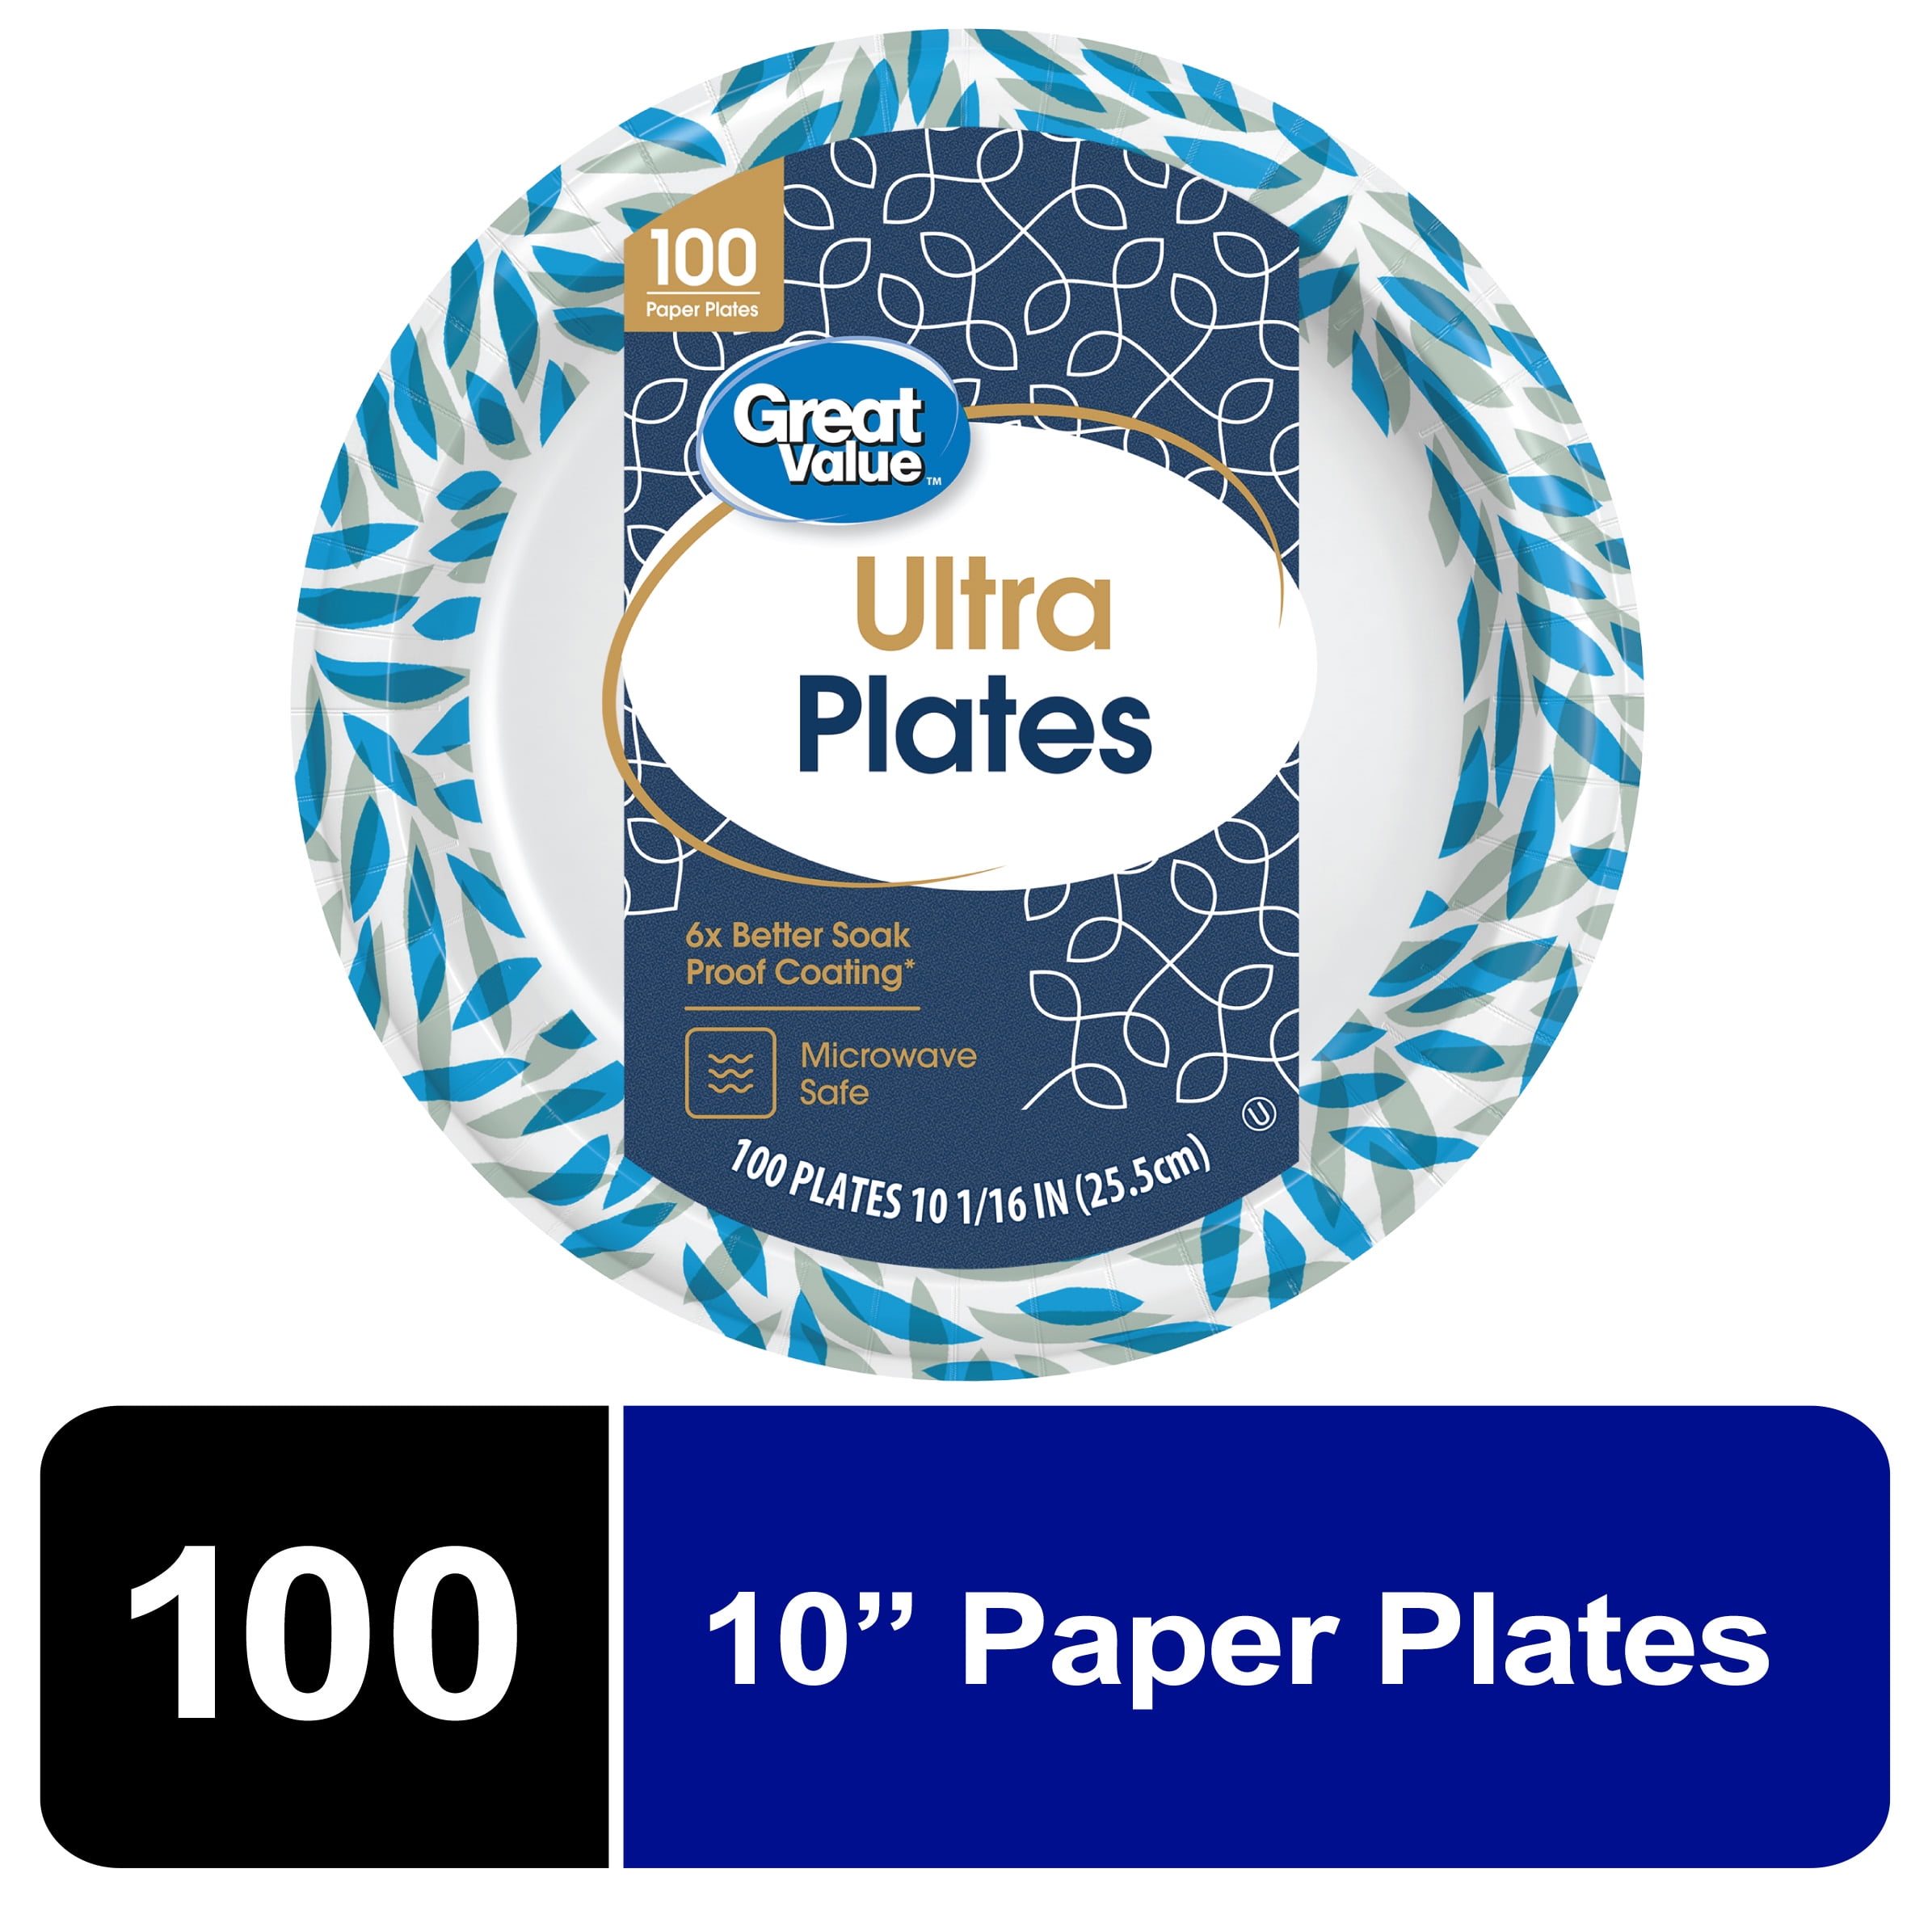 Great Value Ultra Paper Plates, 10", 100 Count - Walmart.com